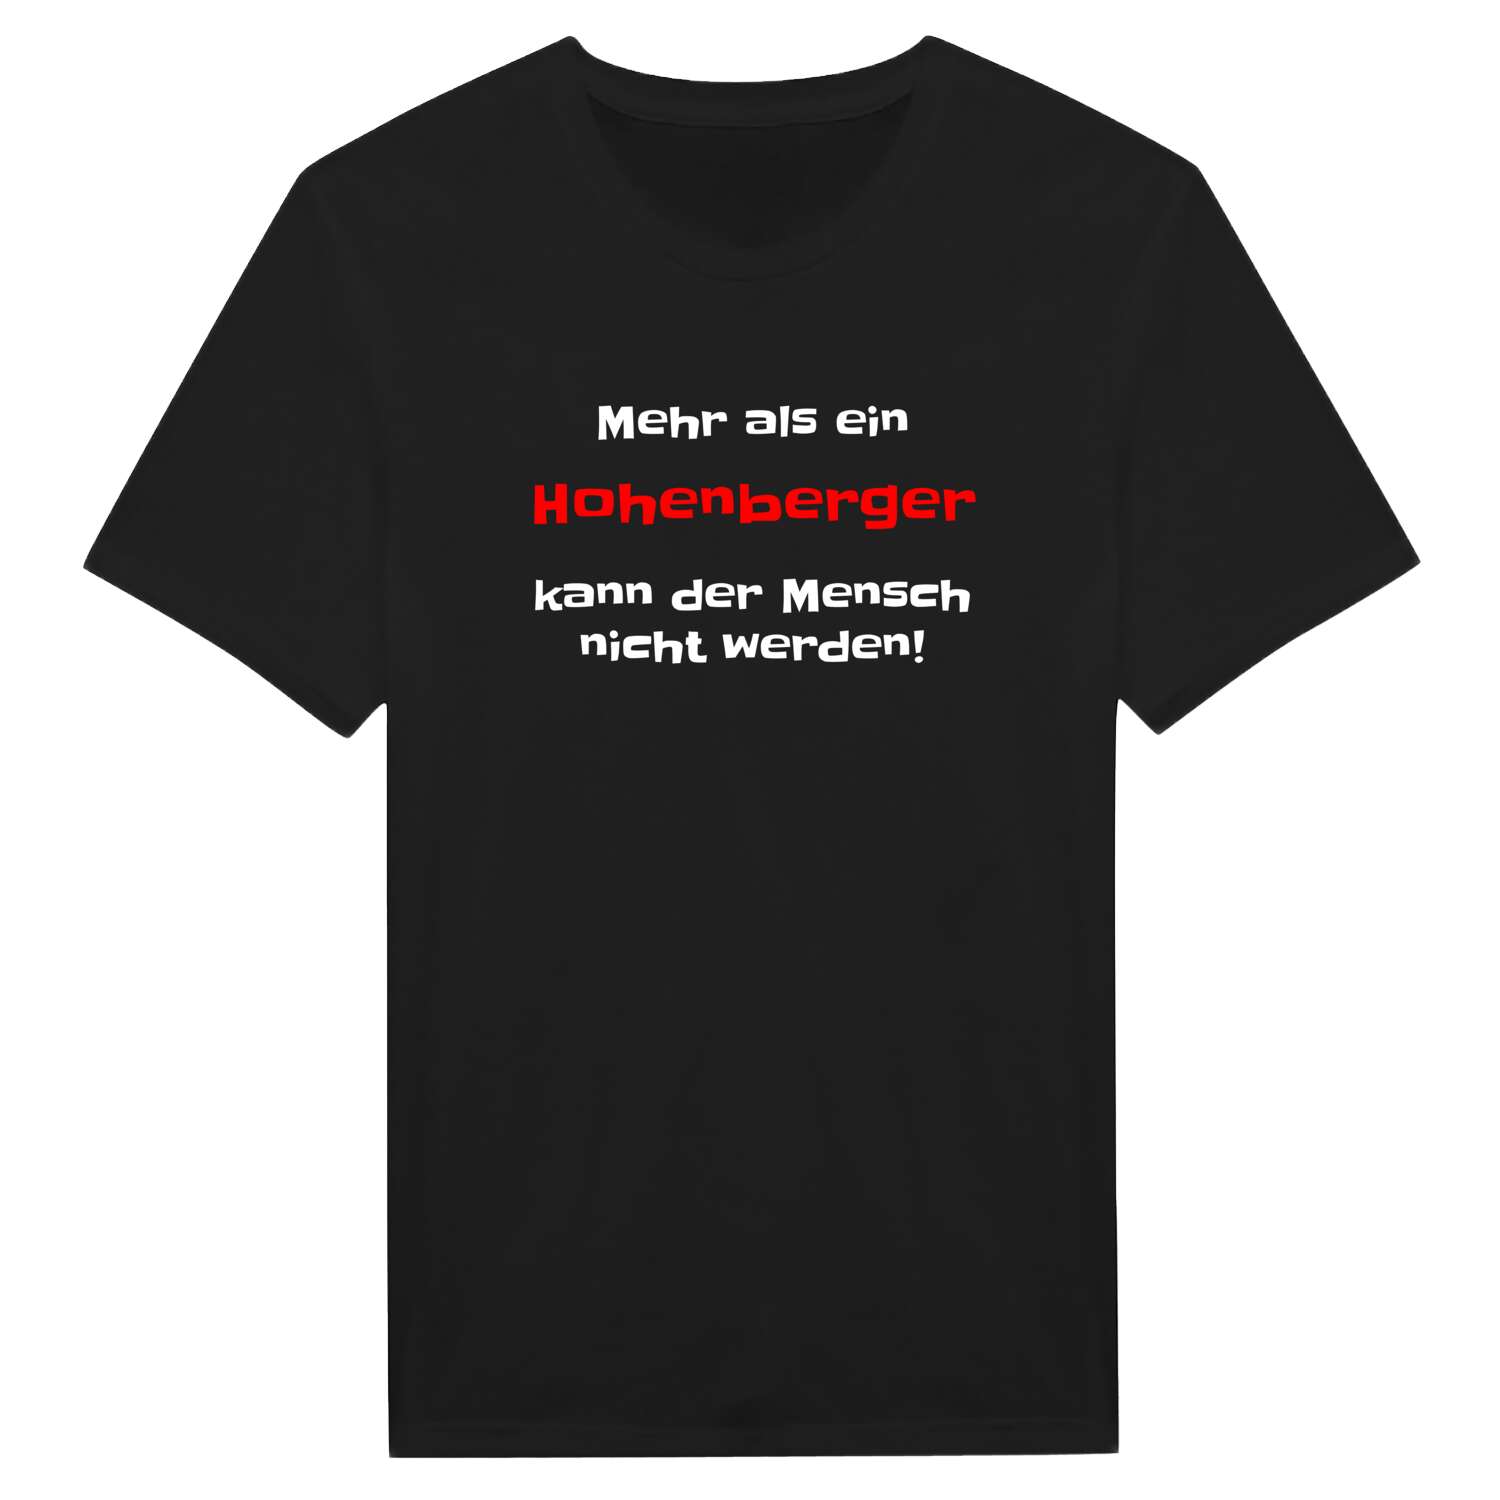 Hohenberg T-Shirt »Mehr als ein«